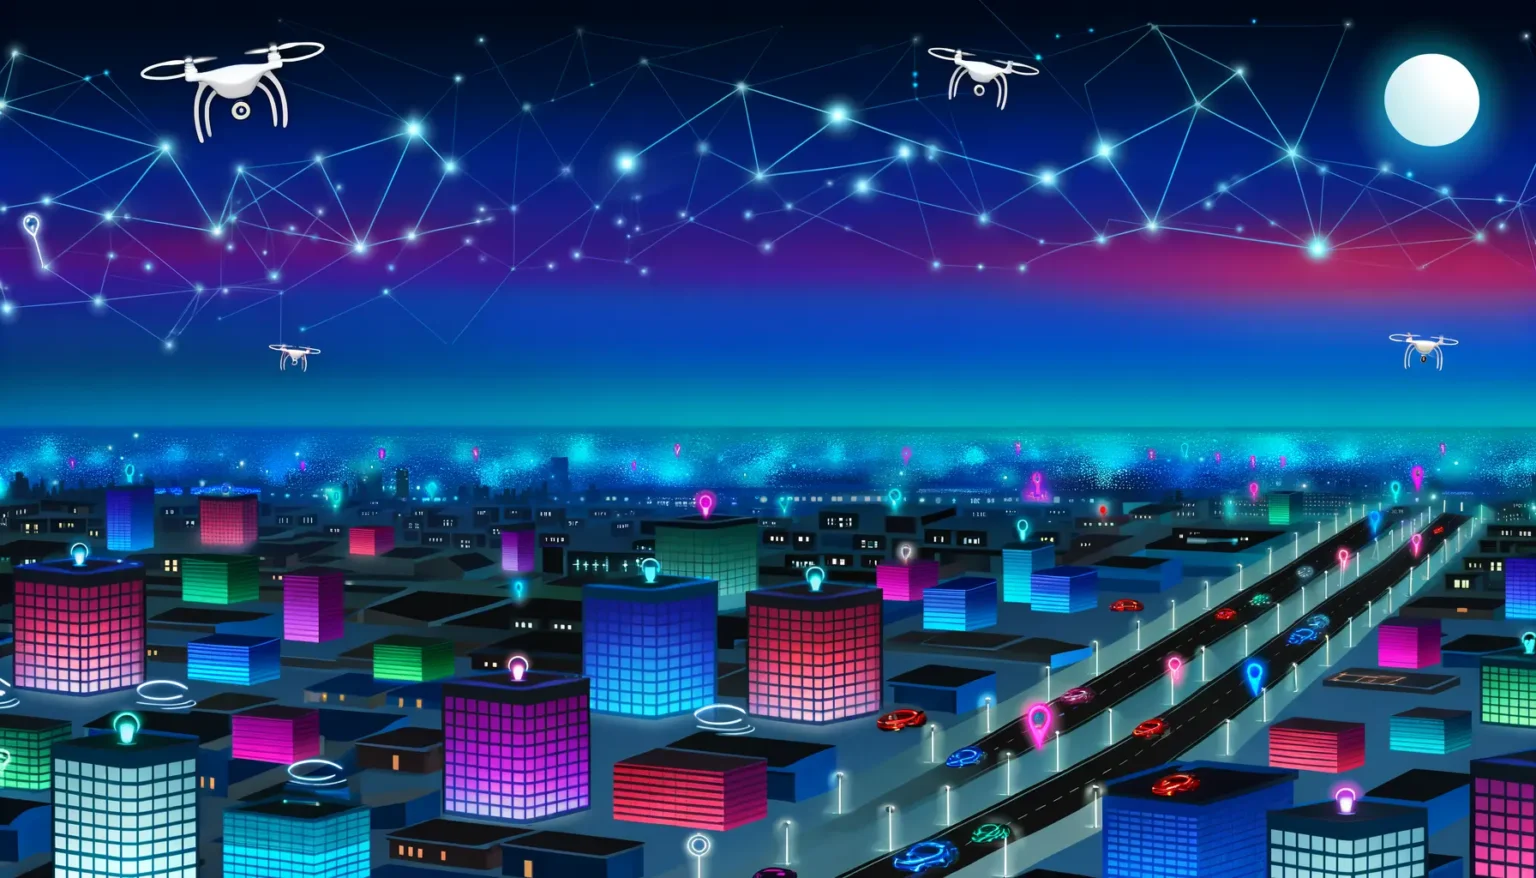 Illustration einer futuristischen Stadt bei Nacht mit bunten, beleuchteten Gebäuden, einer verschwommenen Menschenmenge und fliegenden Drohnen, die durch ein Netzwerk von verbundenen Punkten dargestellt sind. Es herrscht eine Hightech-Atmosphäre mit einem klaren Nachthimmel und einem großen Vollmond im Hintergrund.